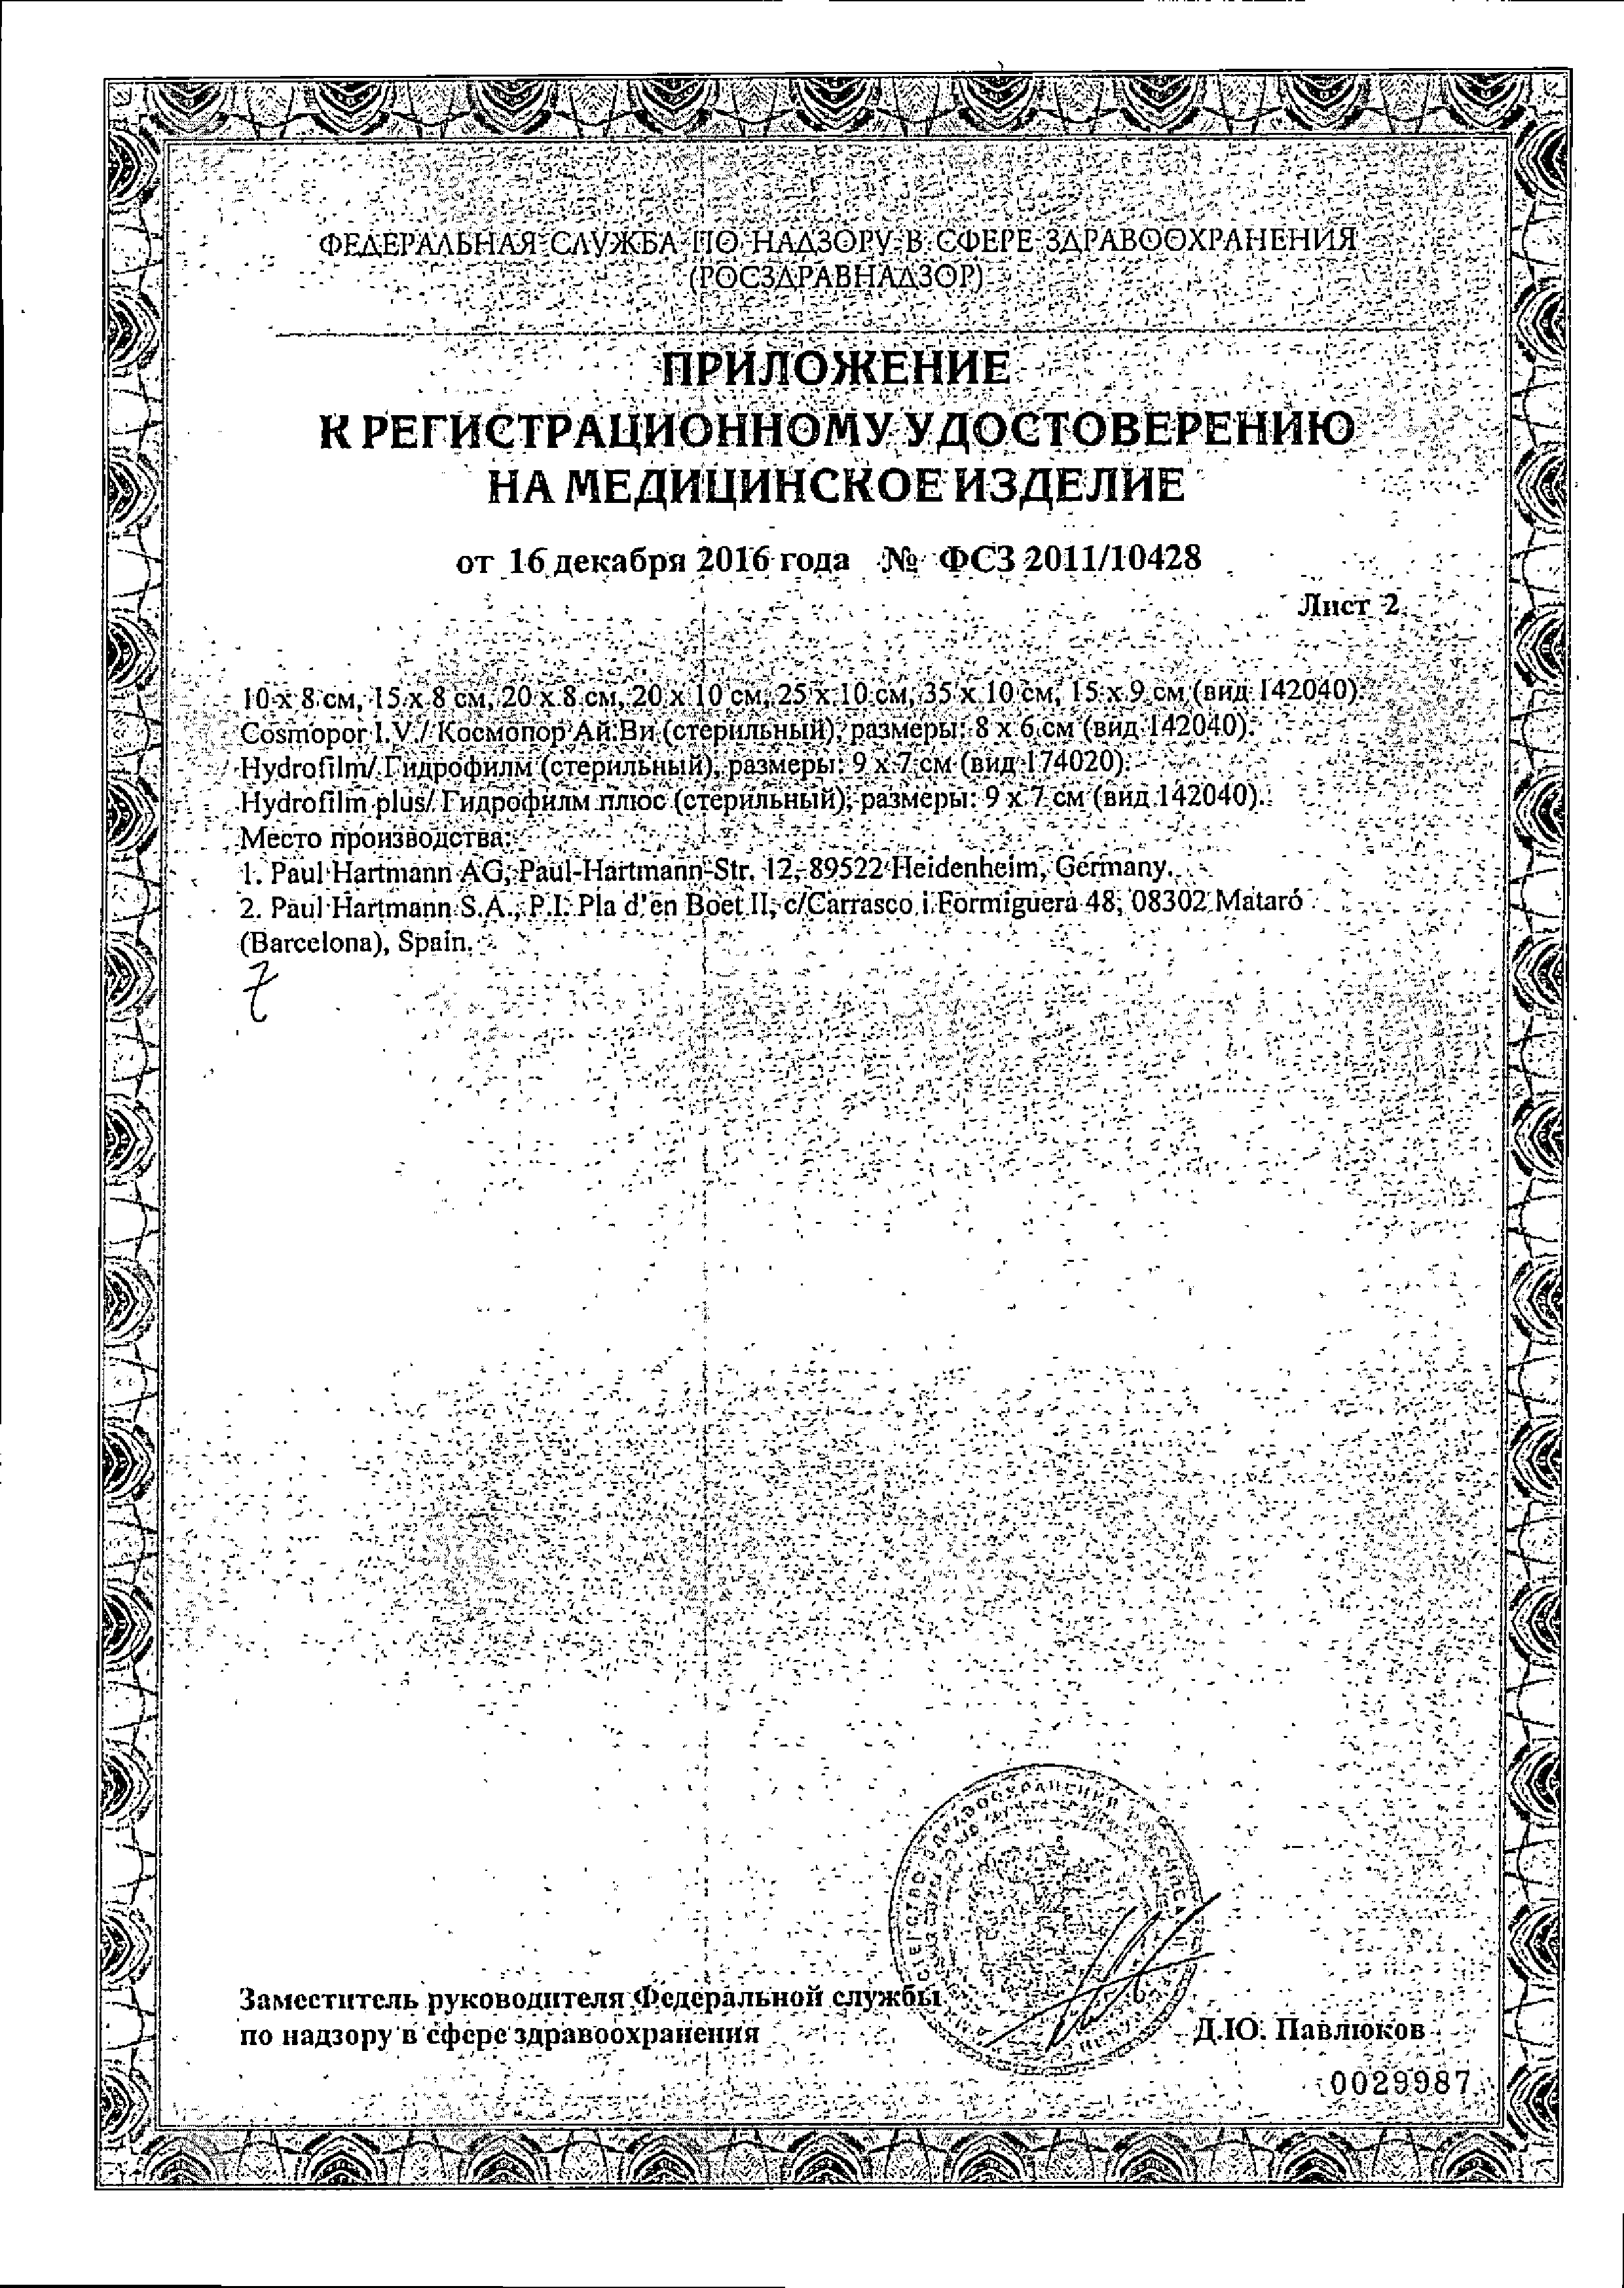 Omniplast Пластырь фиксирующий сертификат